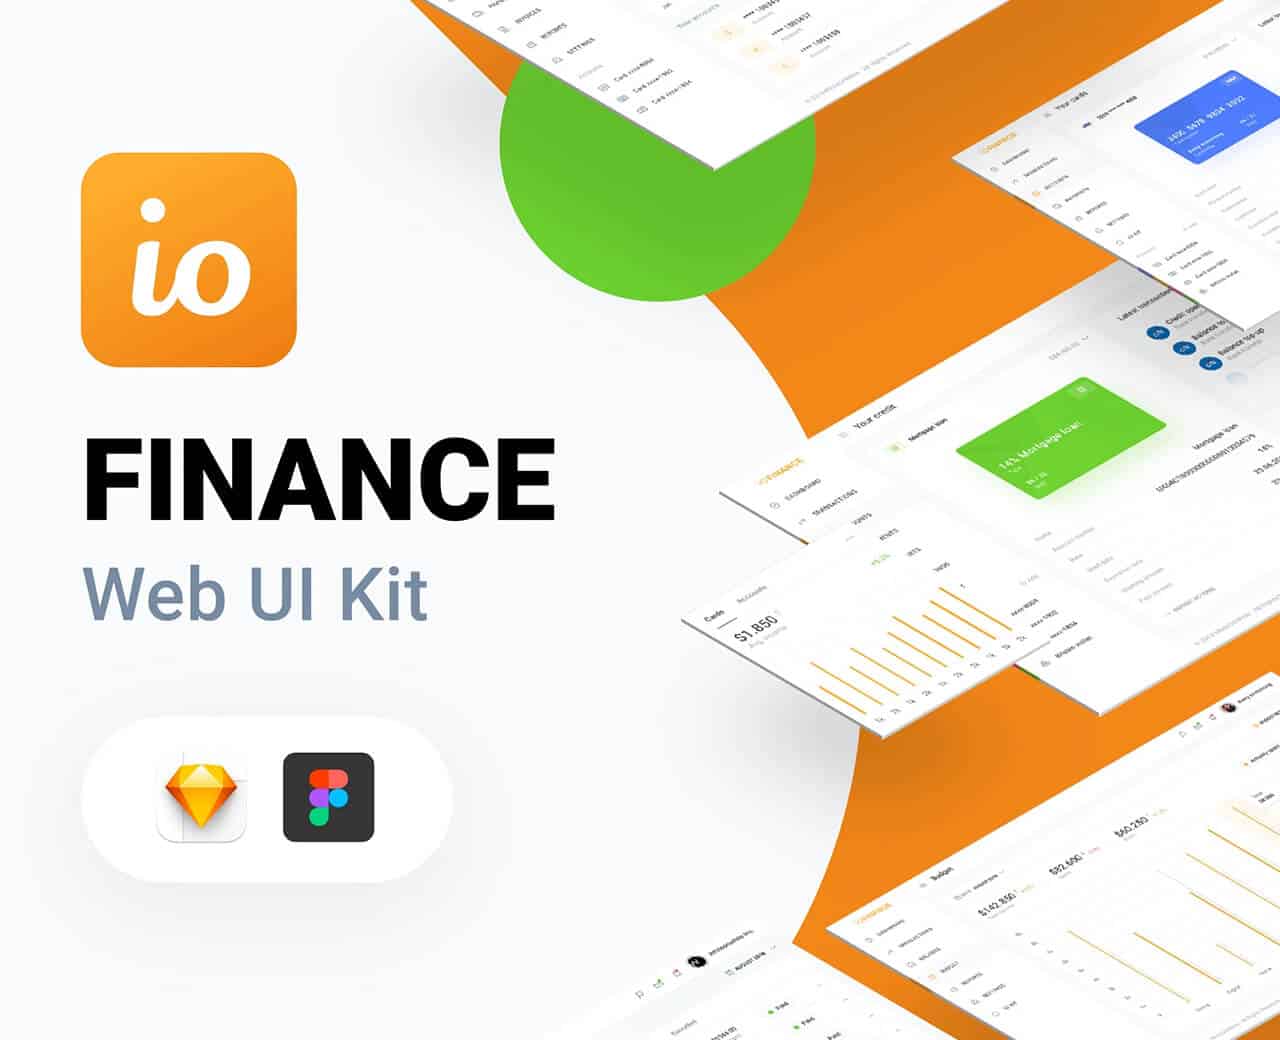 IO Finance Web UI Kit made with Figma & Sketch